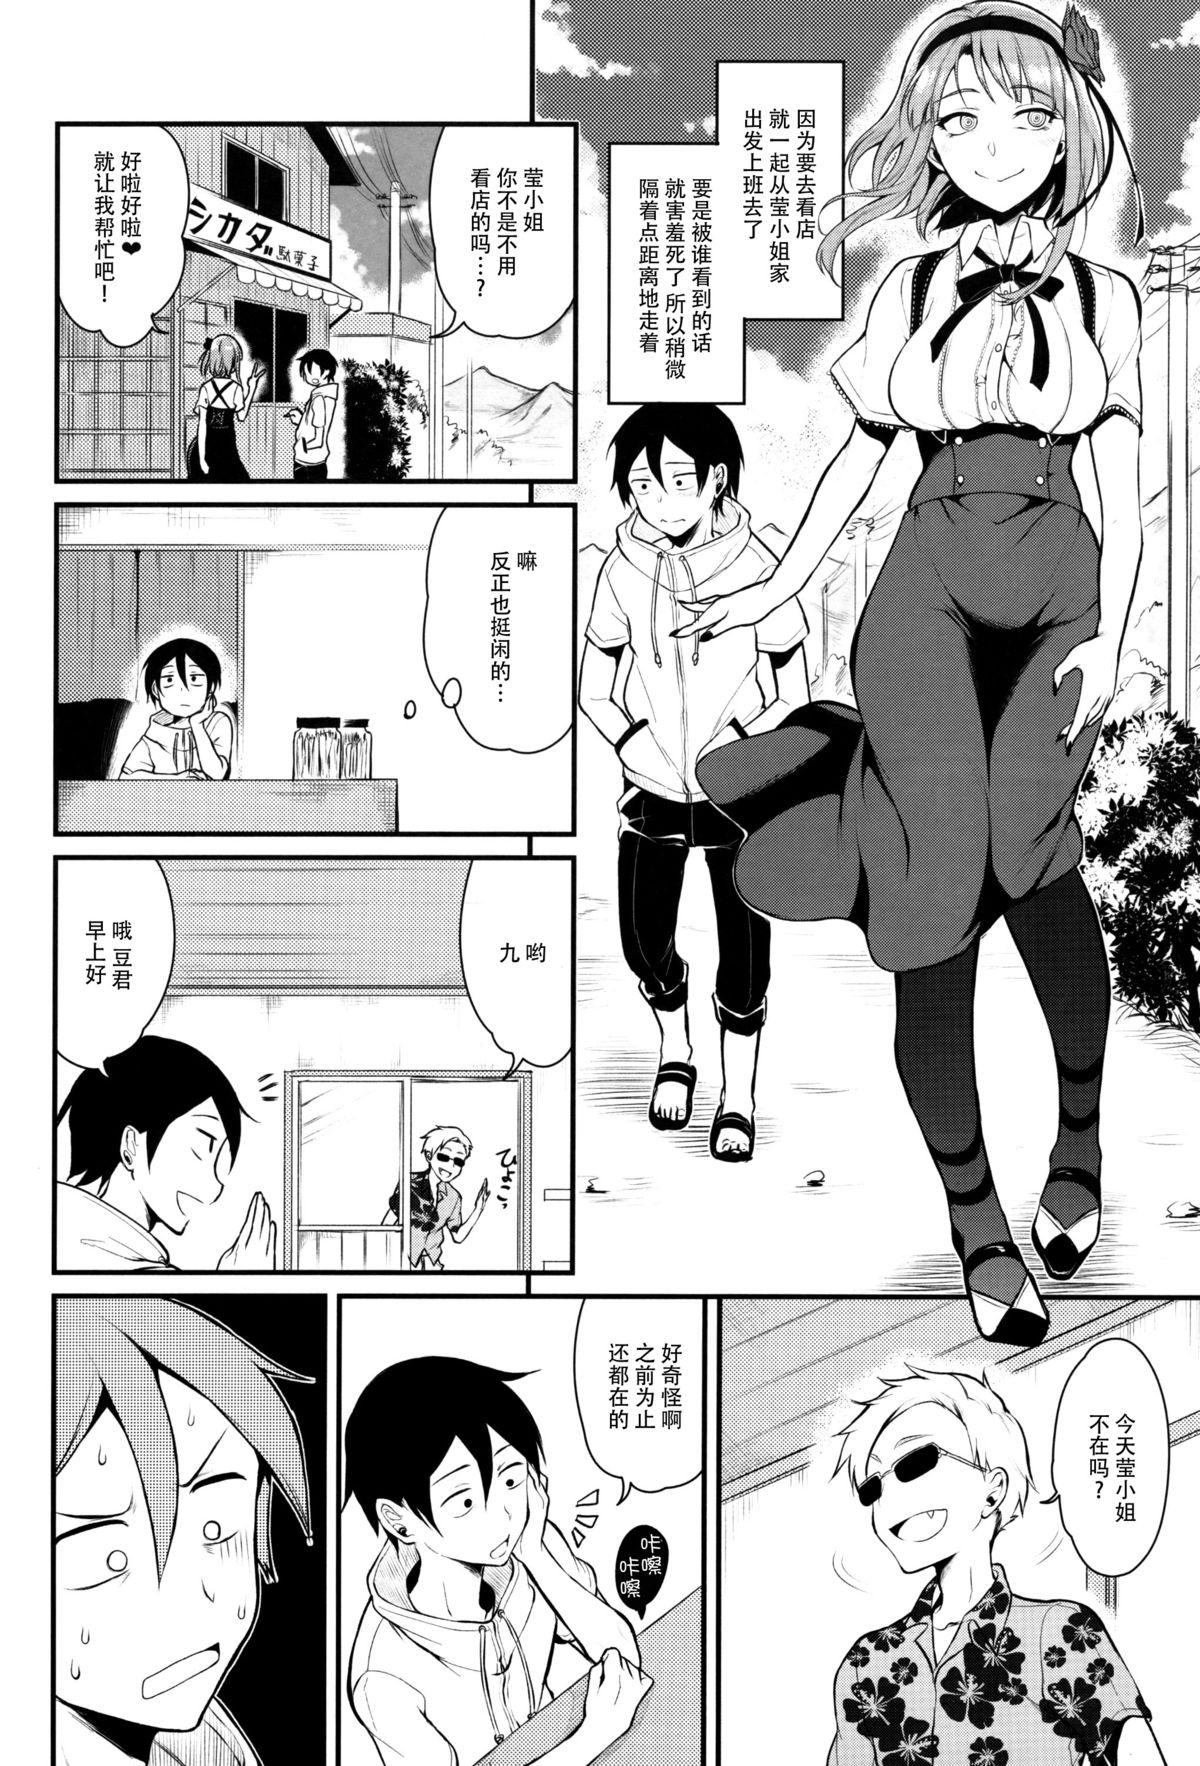 Dicksucking Otona no Dagashi 3 - Dagashi kashi High - Page 11